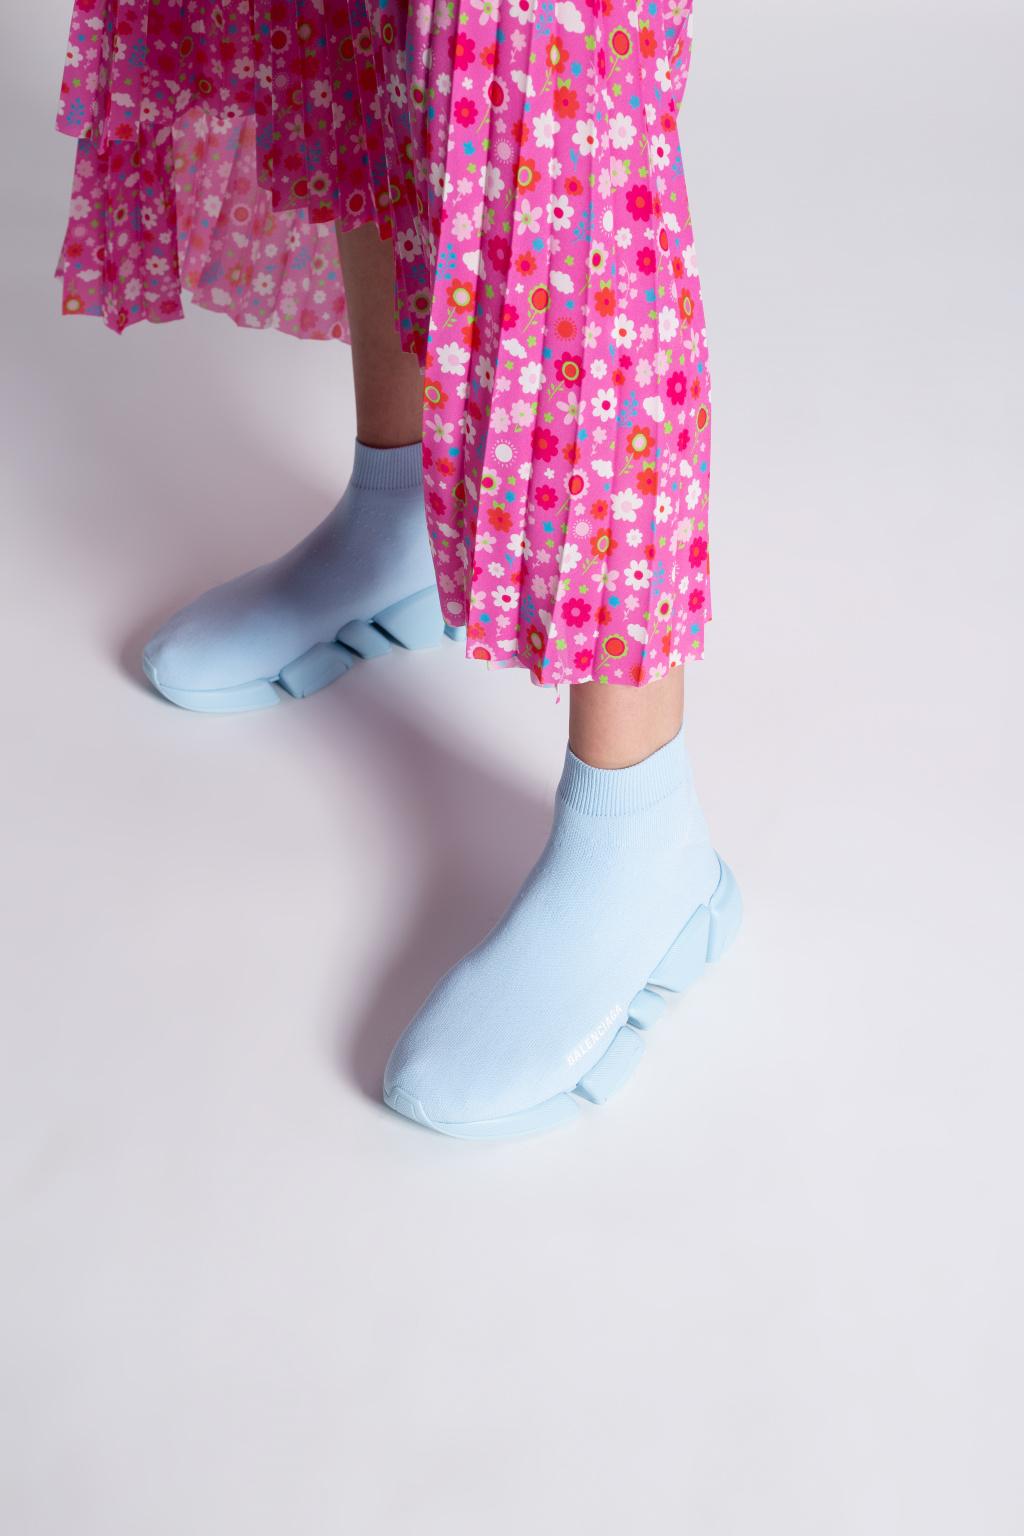 Balenciaga 'speed 2.0 Lt' Sock Sneakers in Blue | Lyst